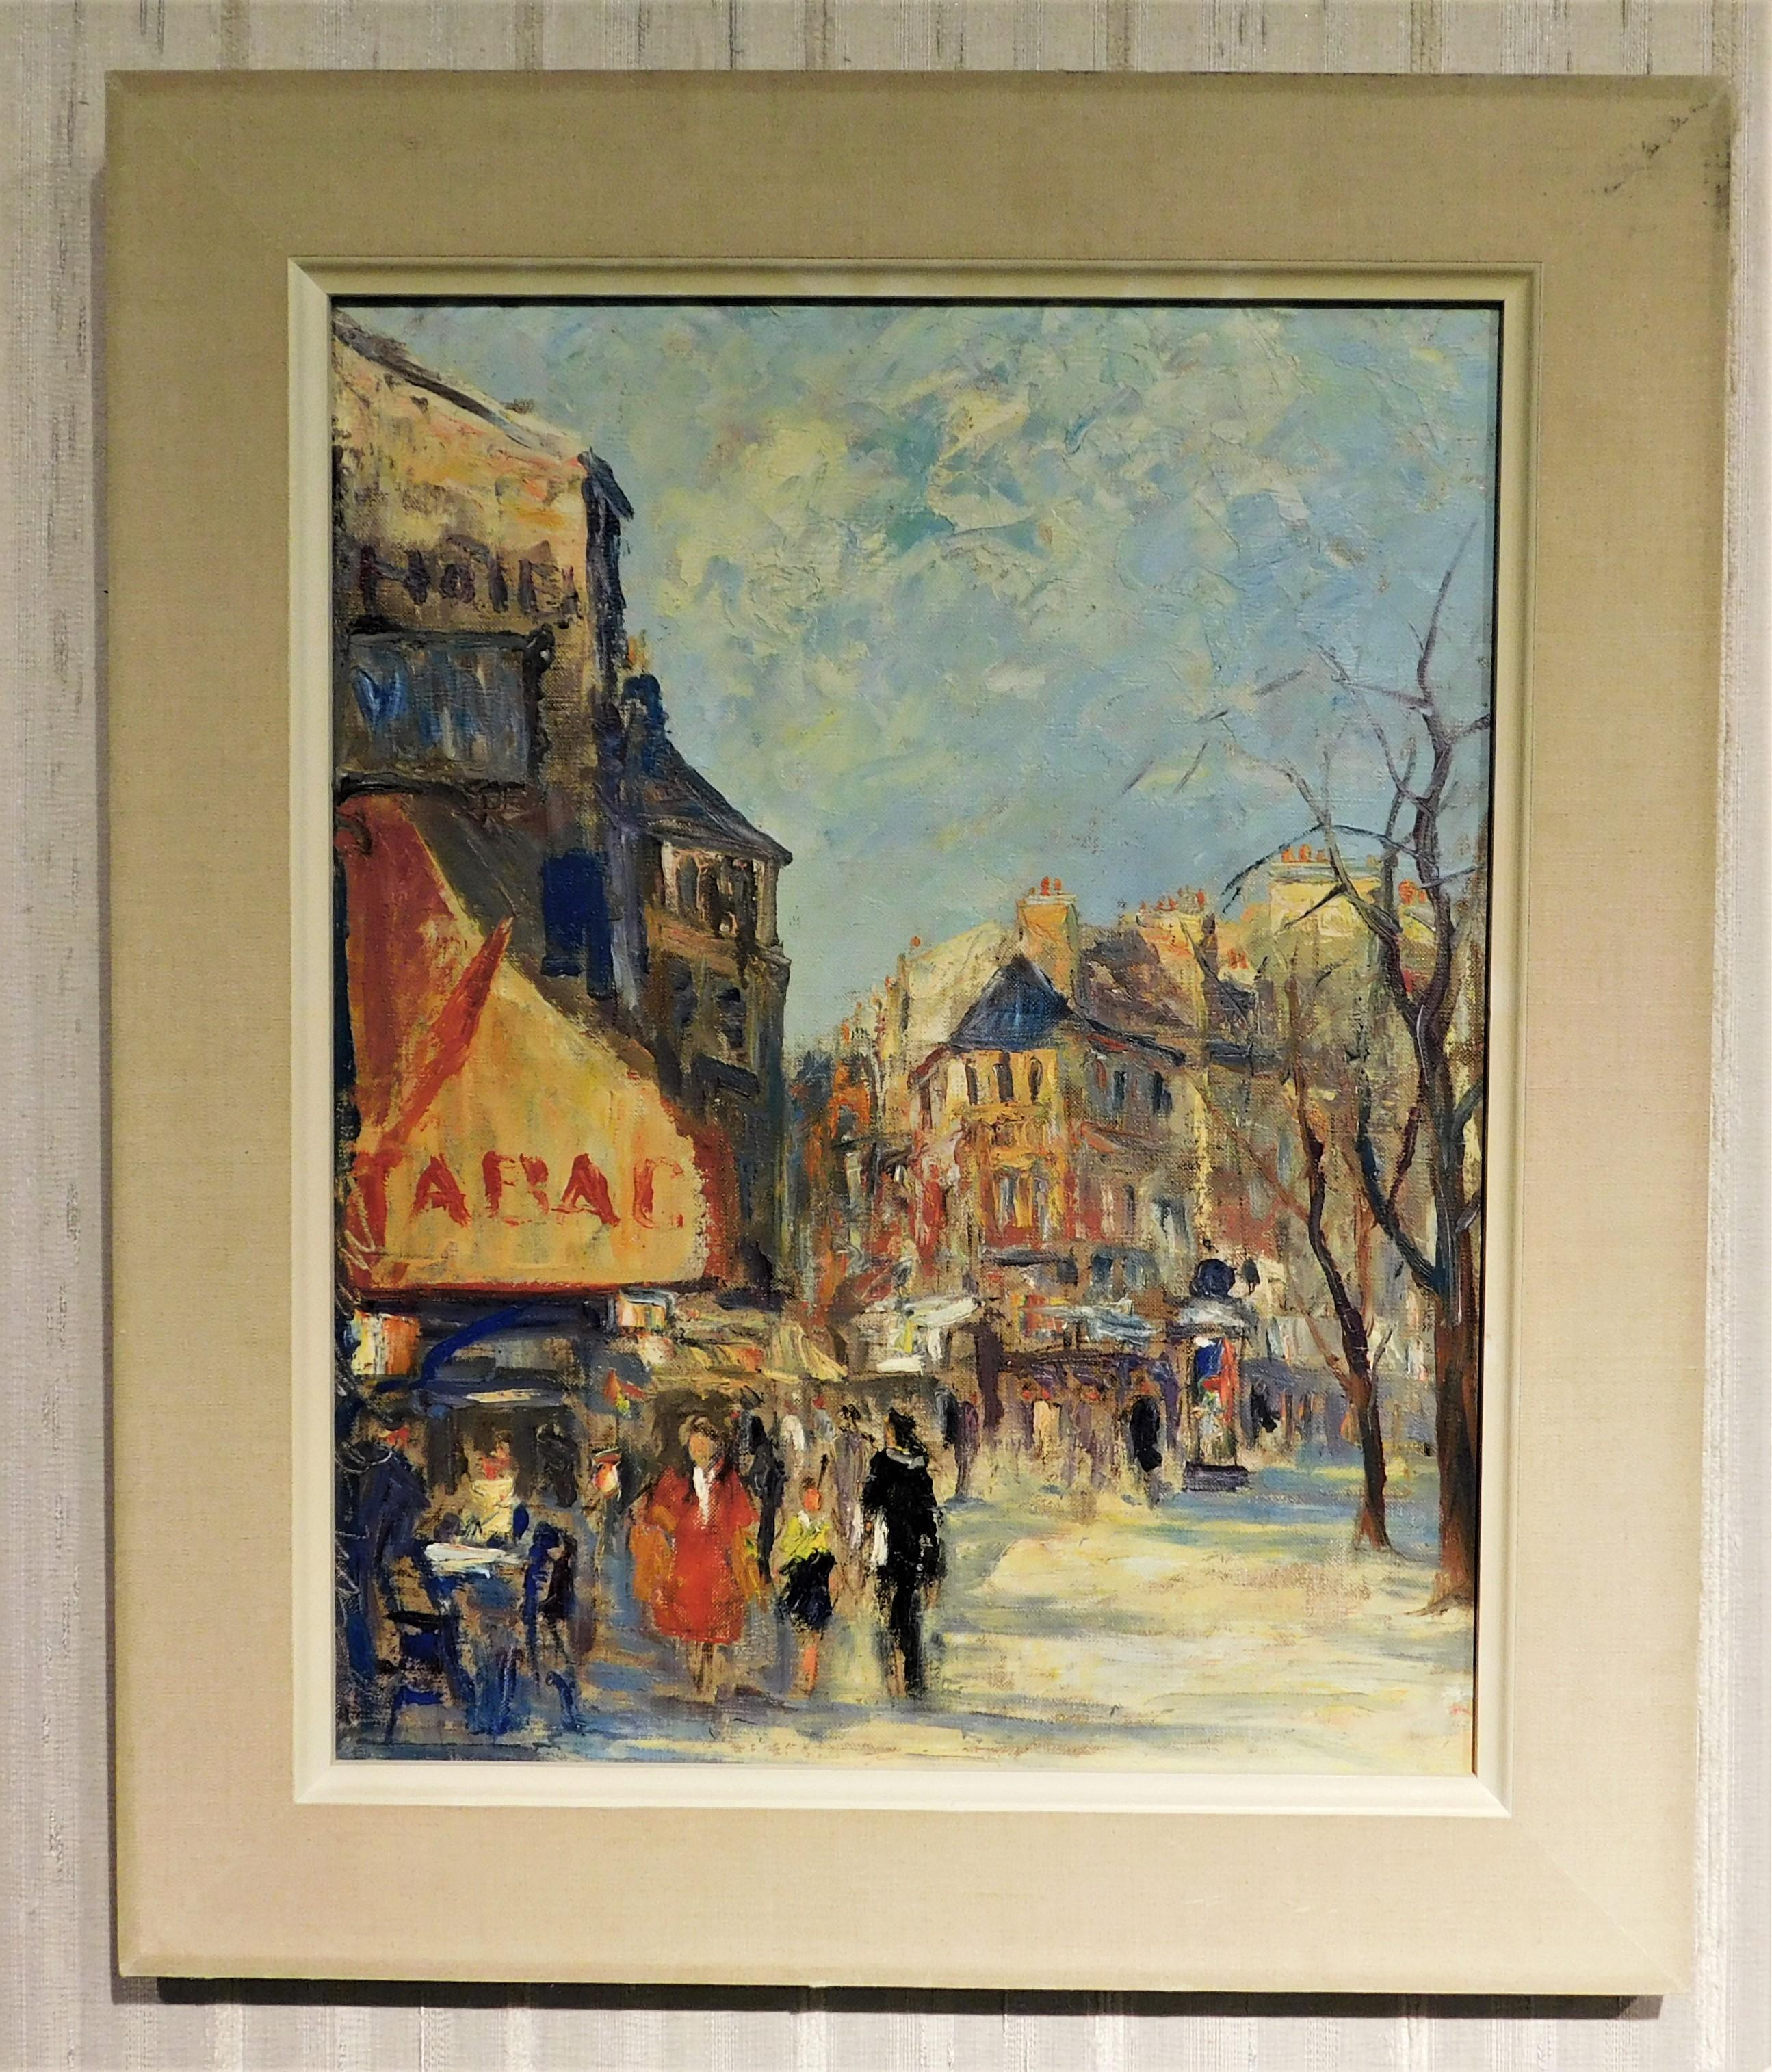 Paint Jean Le Van 'Danish' Oil on Canvas Original Art